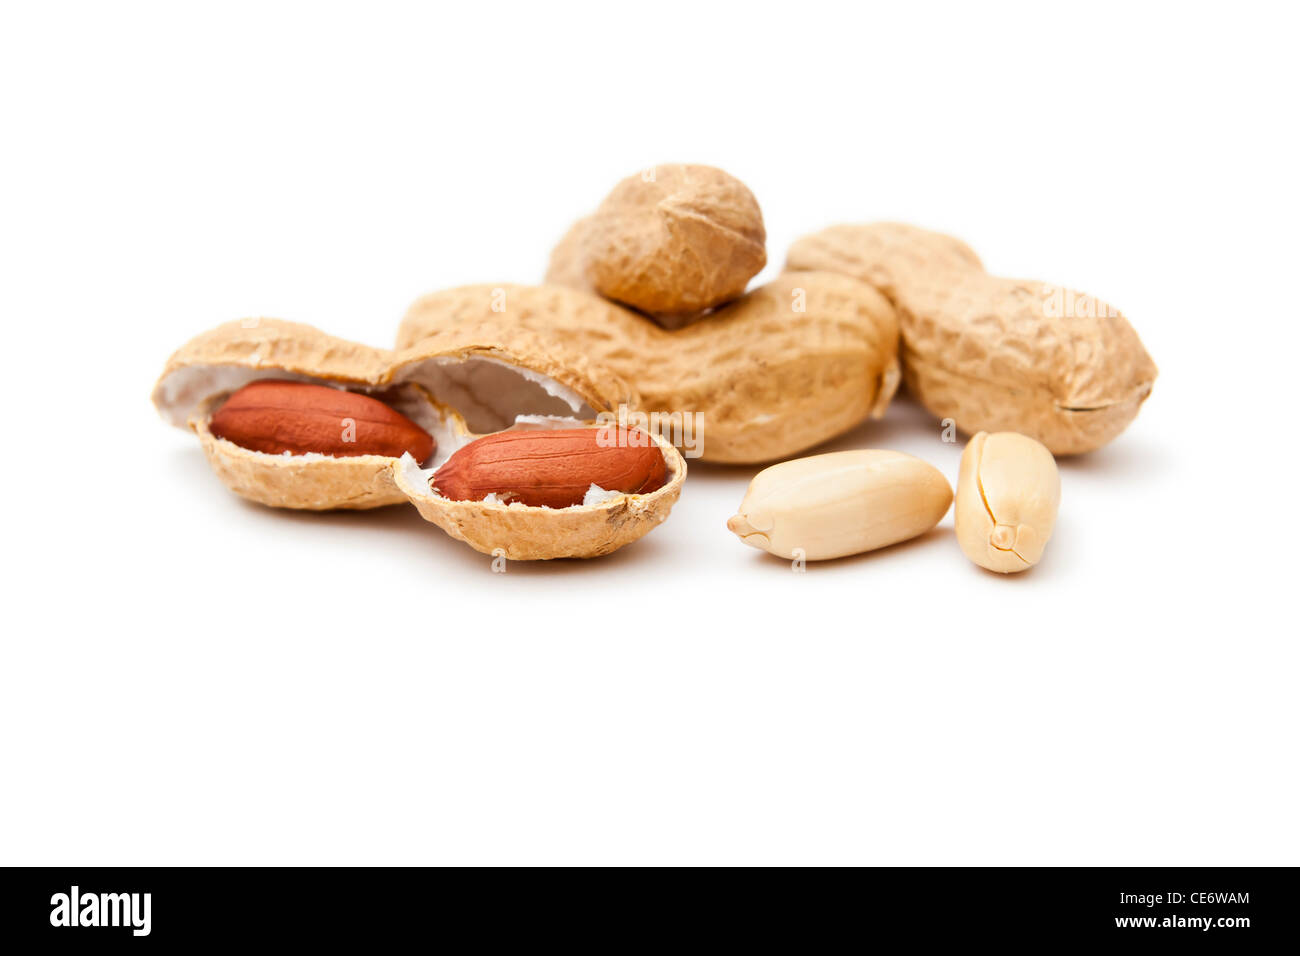 Ein Bild von einigen schönen Erdnüssen auf weißem Hintergrund Stockfoto